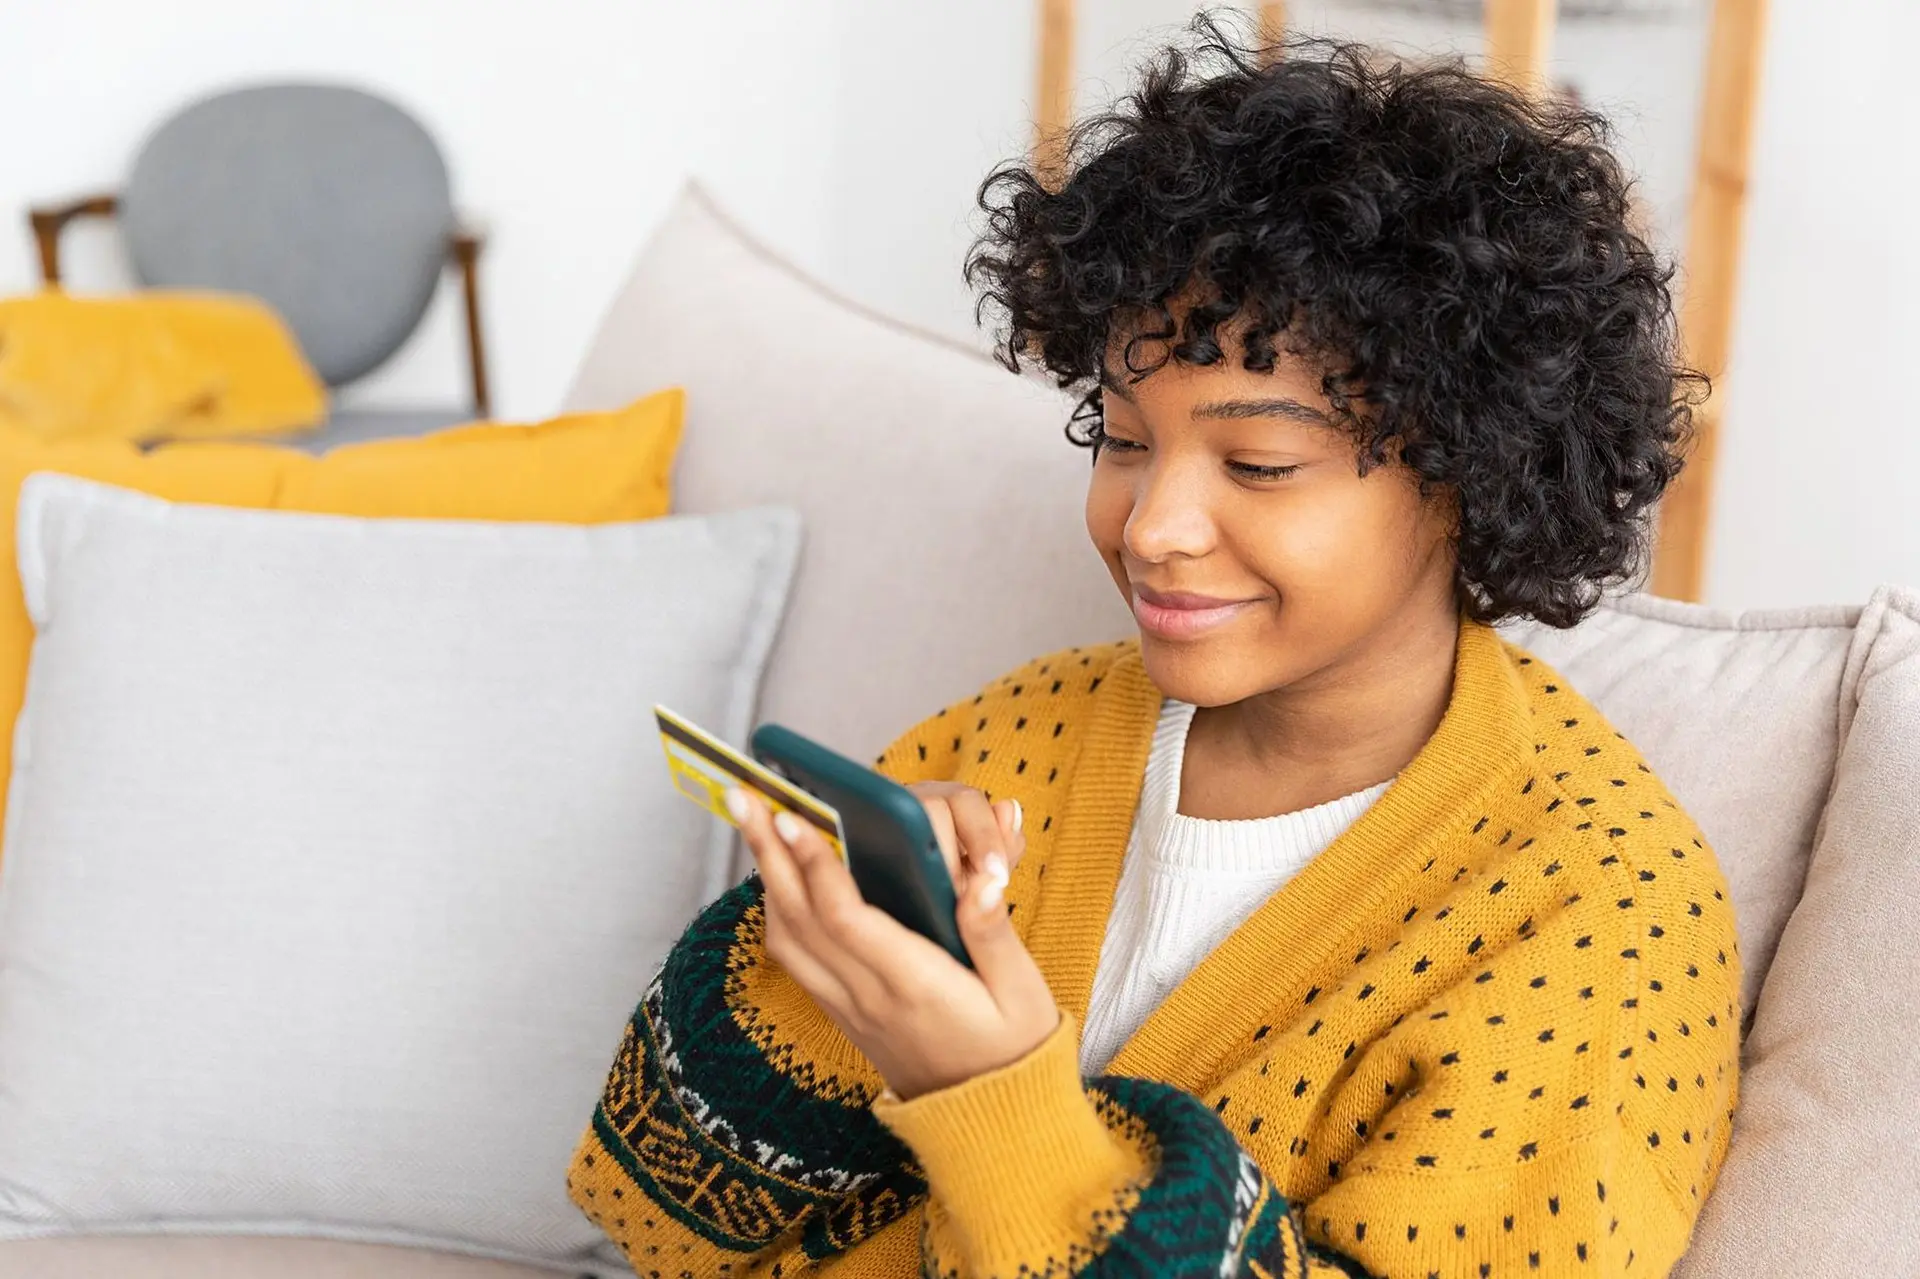 Eine junge Frau sitzt auf einem Sofa und hält neben einer goldenen Kreditkarte, ein Smartphone in den Händen. Sie schaut aufs Display. 